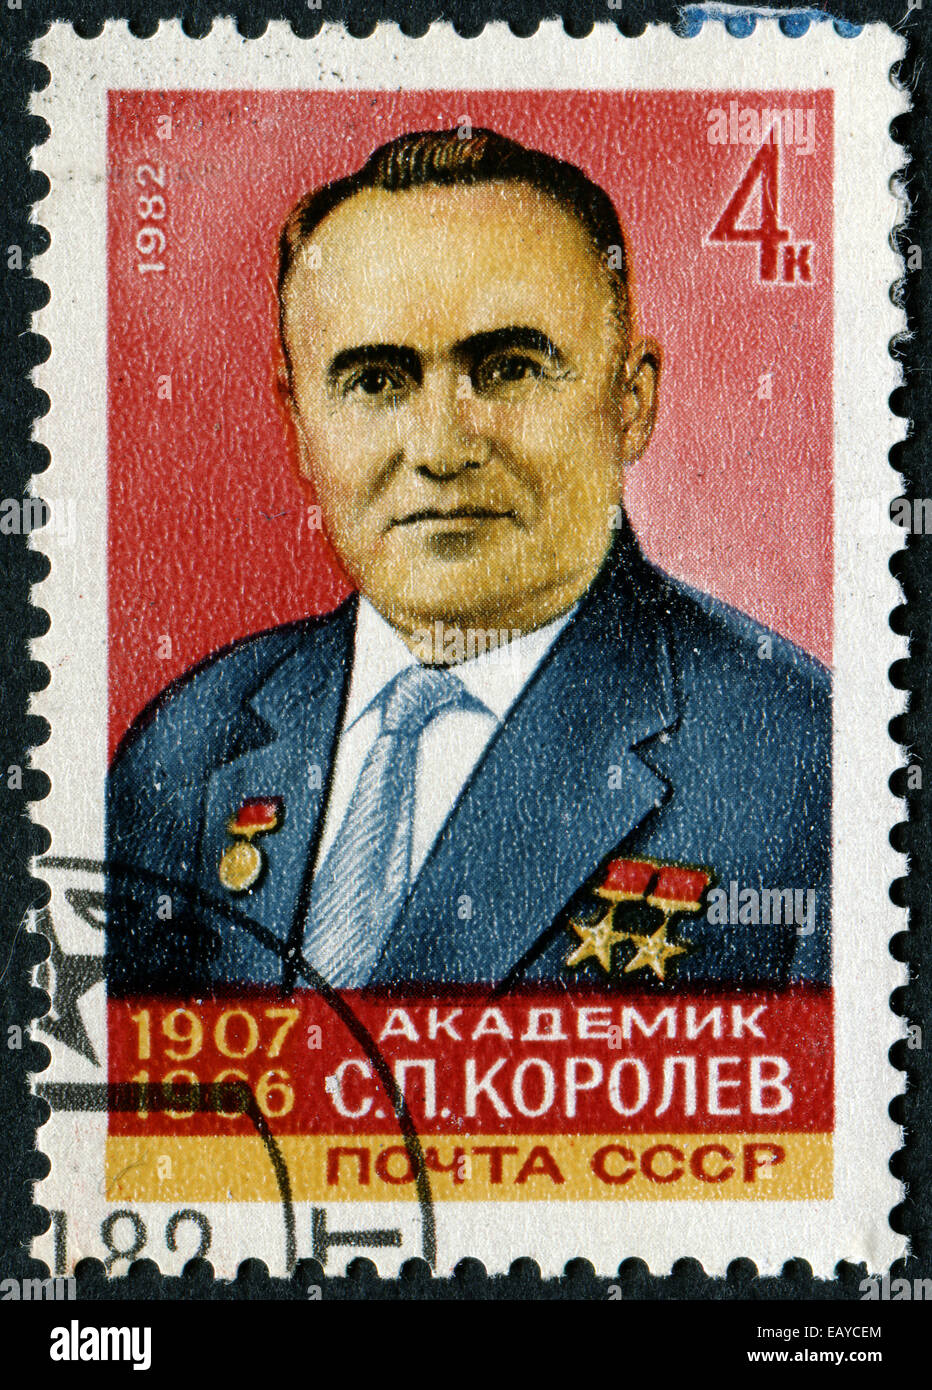 Urss - VERS 1982 : timbres en URSS montre portrait du vaisseau spatial soviétique Korolev designer avec l'inscription Banque D'Images